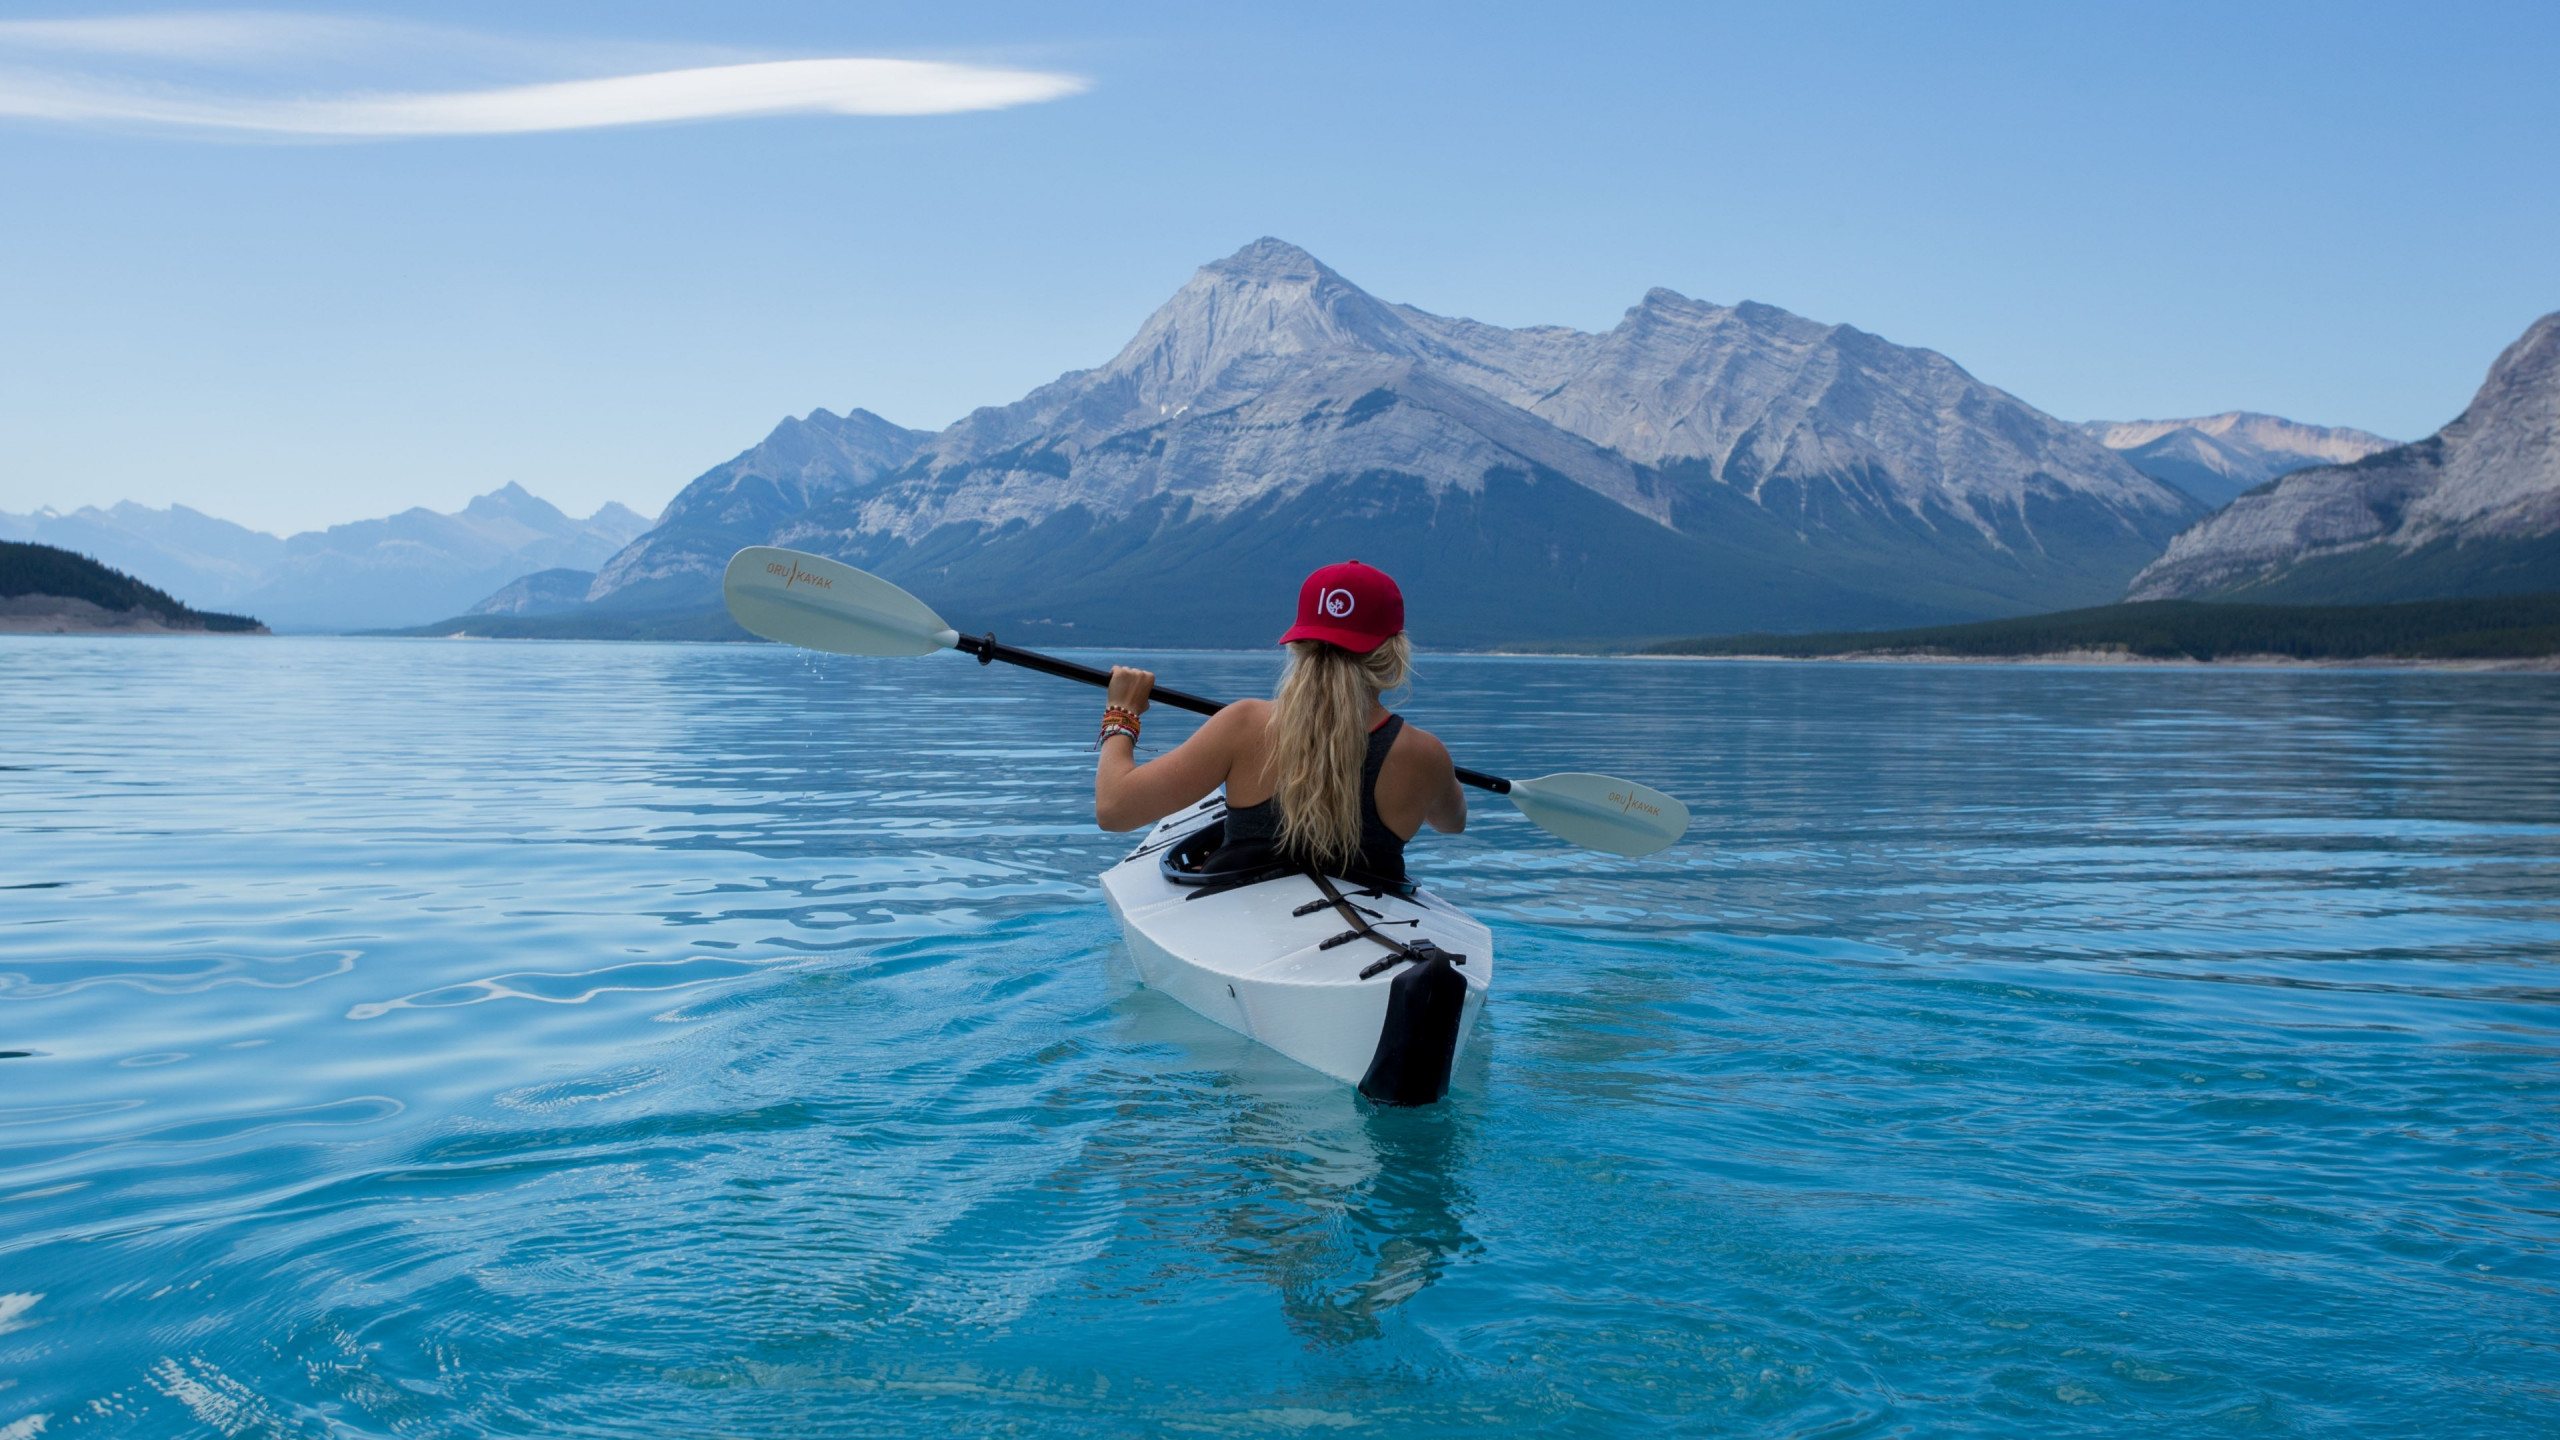 Trip with kayak on lake wallpaper 2560x1440